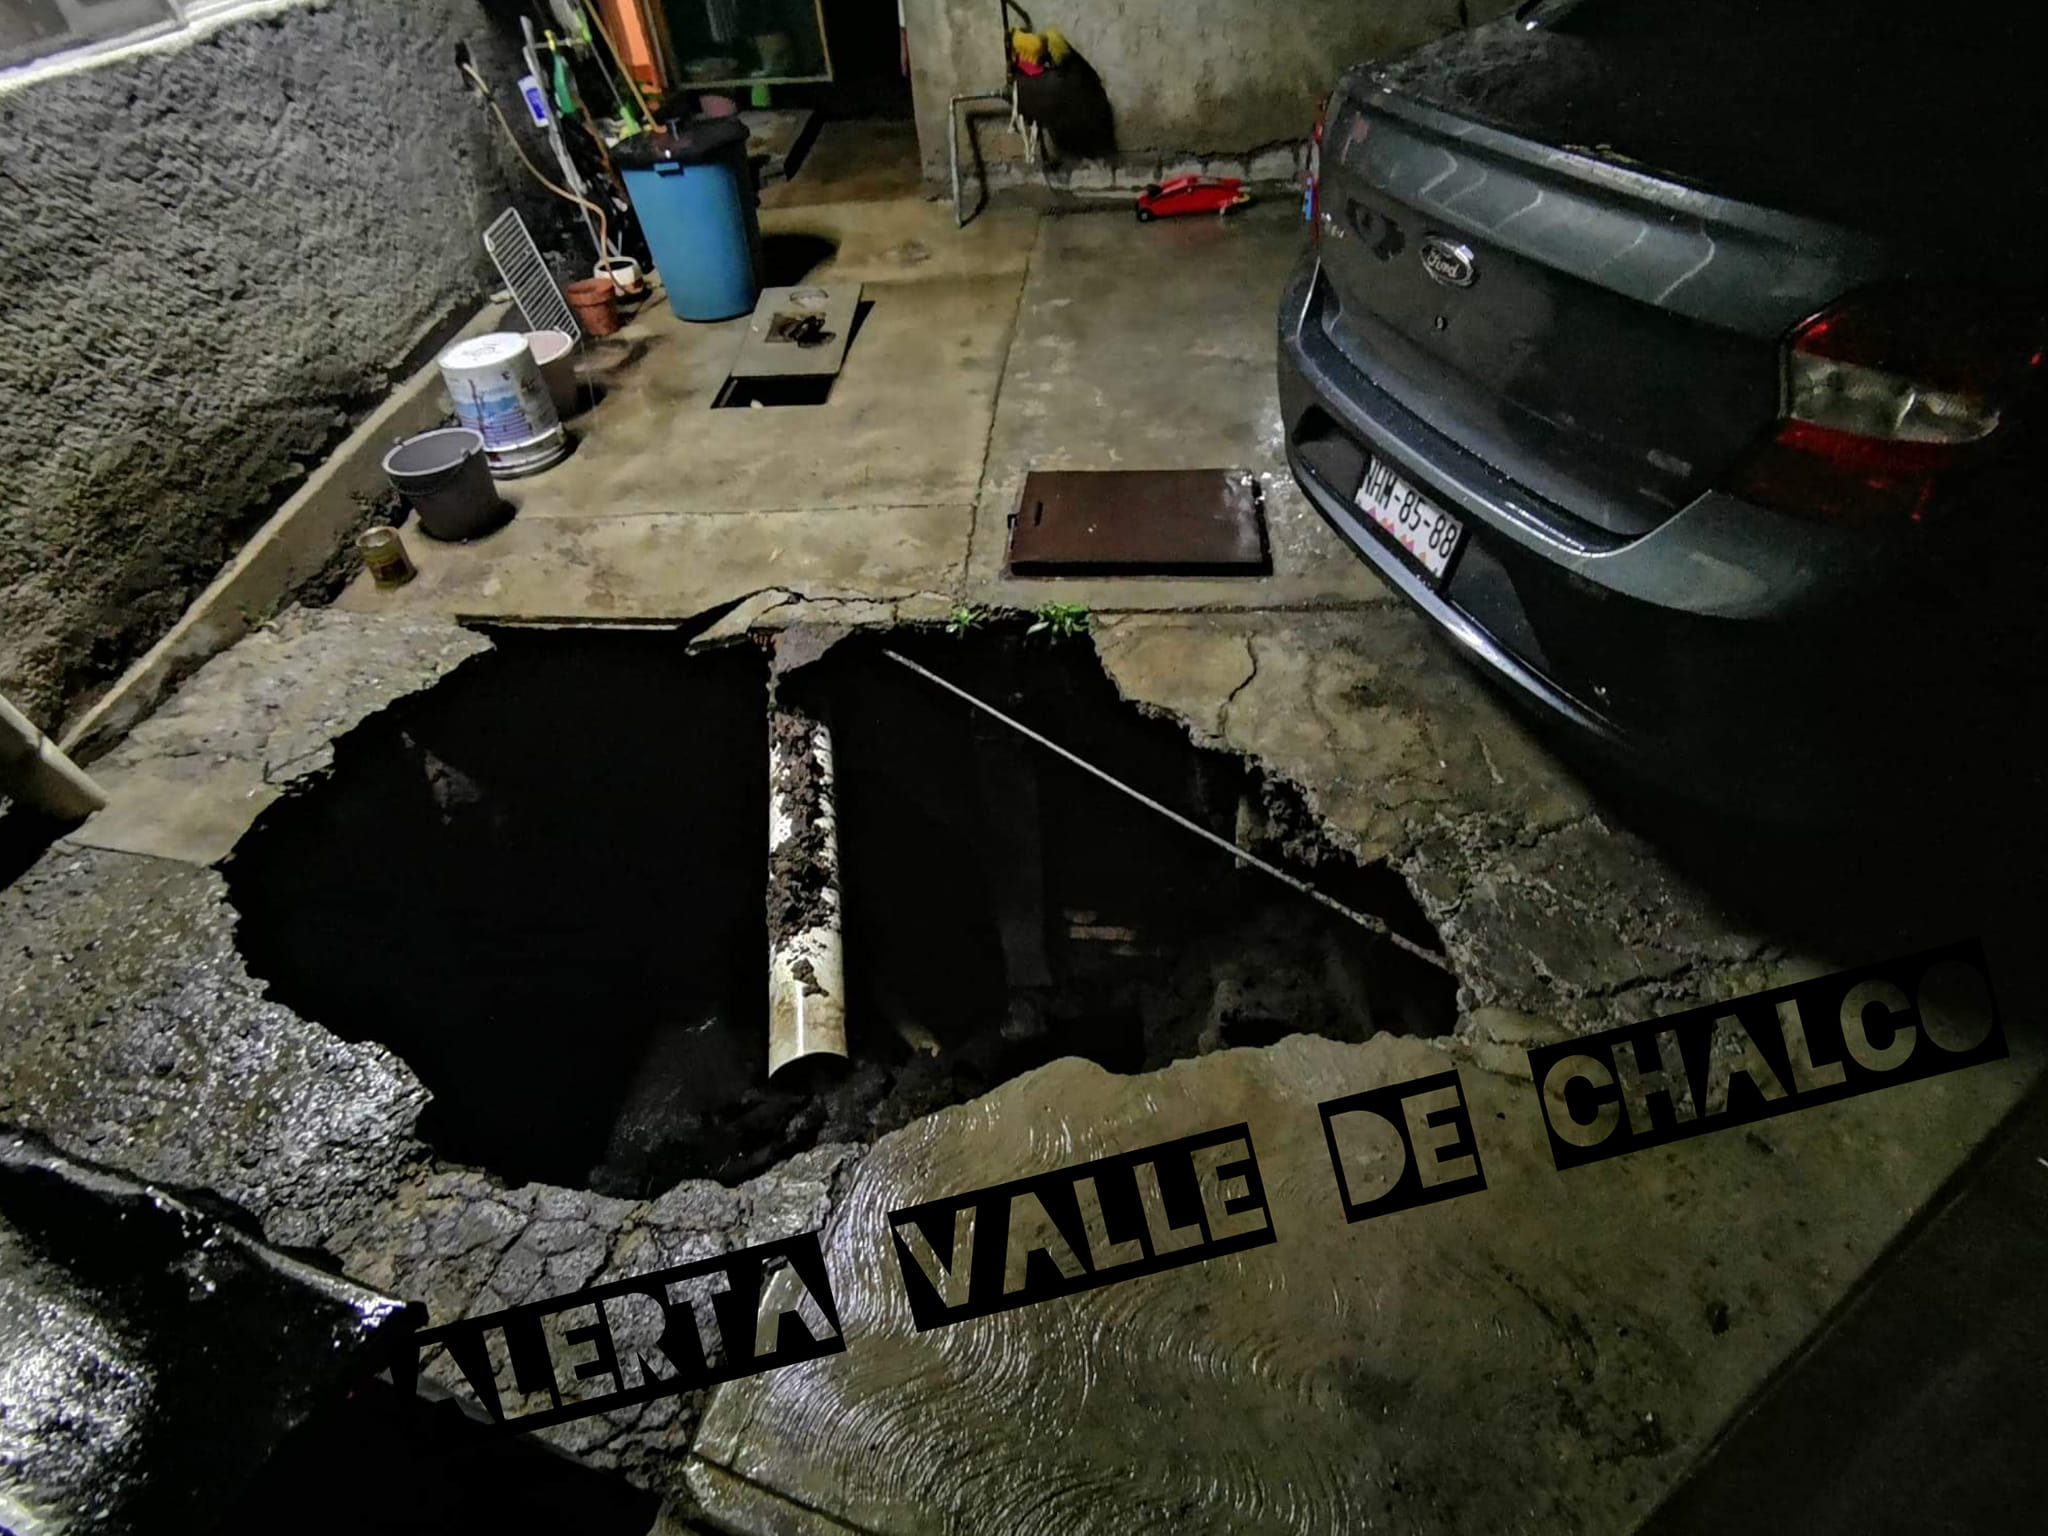 La denunciante aseguró que las autoridades no han atendido el socavón en su domicilio, en Valle de Chalco (Foto: Alerta Valle de Chalco / Facebook)